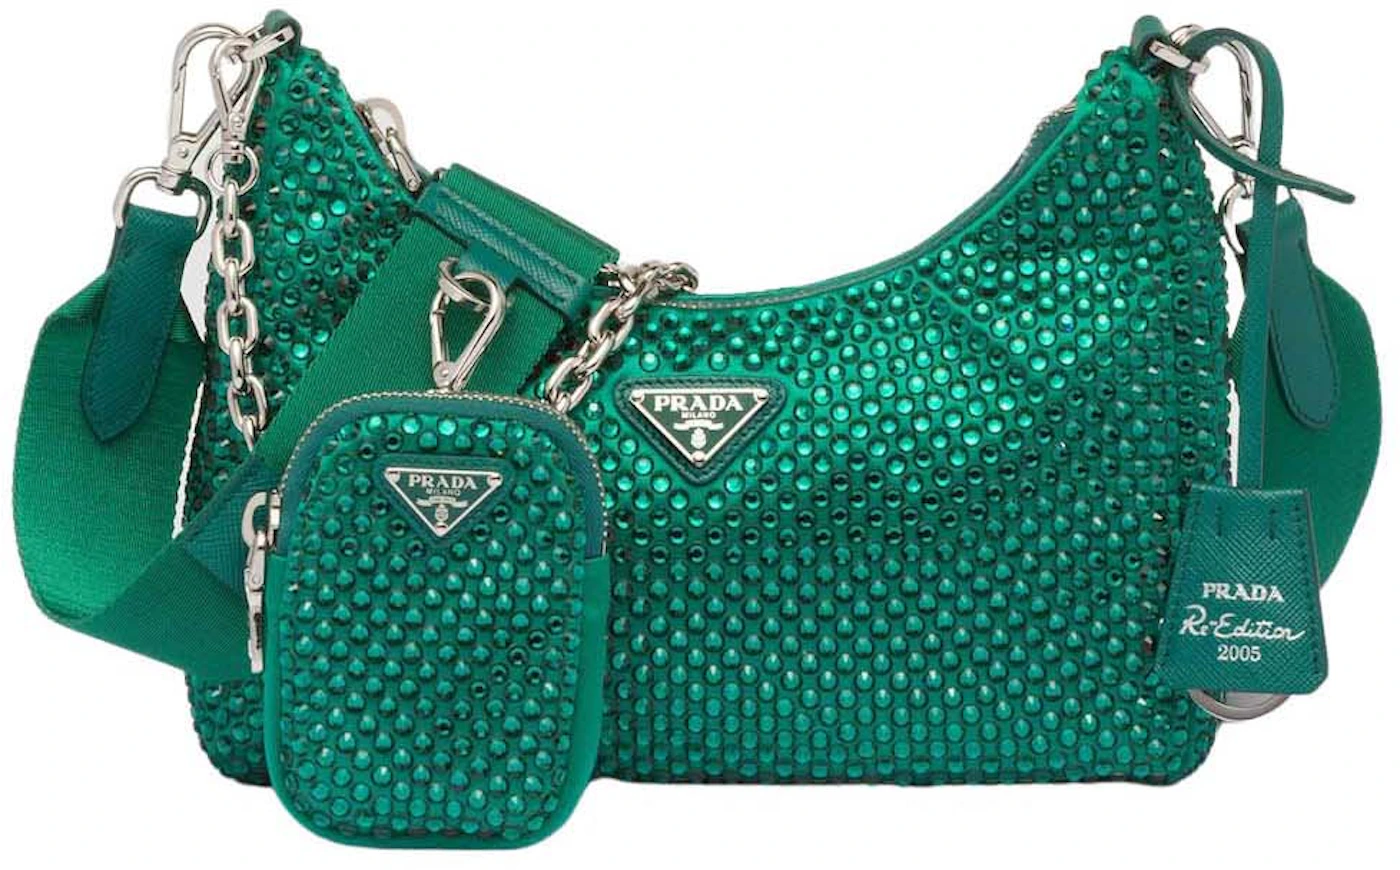 Prada, Bags, Prada Re Edition Green Crystal Bag